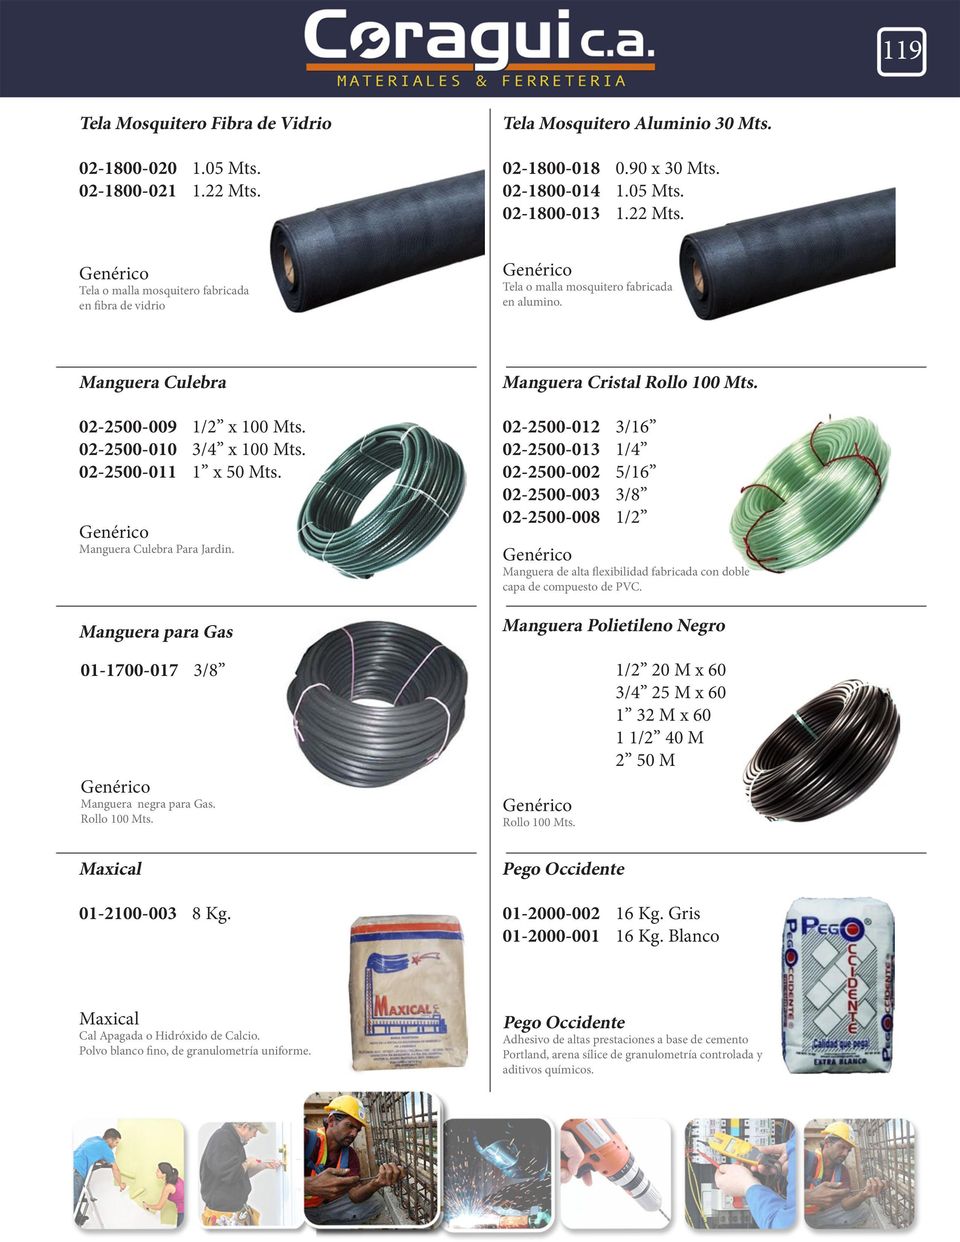 02-2500-012 3/16 02-2500-013 1/4 02-2500-002 5/16 02-2500-003 3/8 02-2500-008 1/2 Manguera de alta flexibilidad fabricada con doble capa de compuesto de PVC.